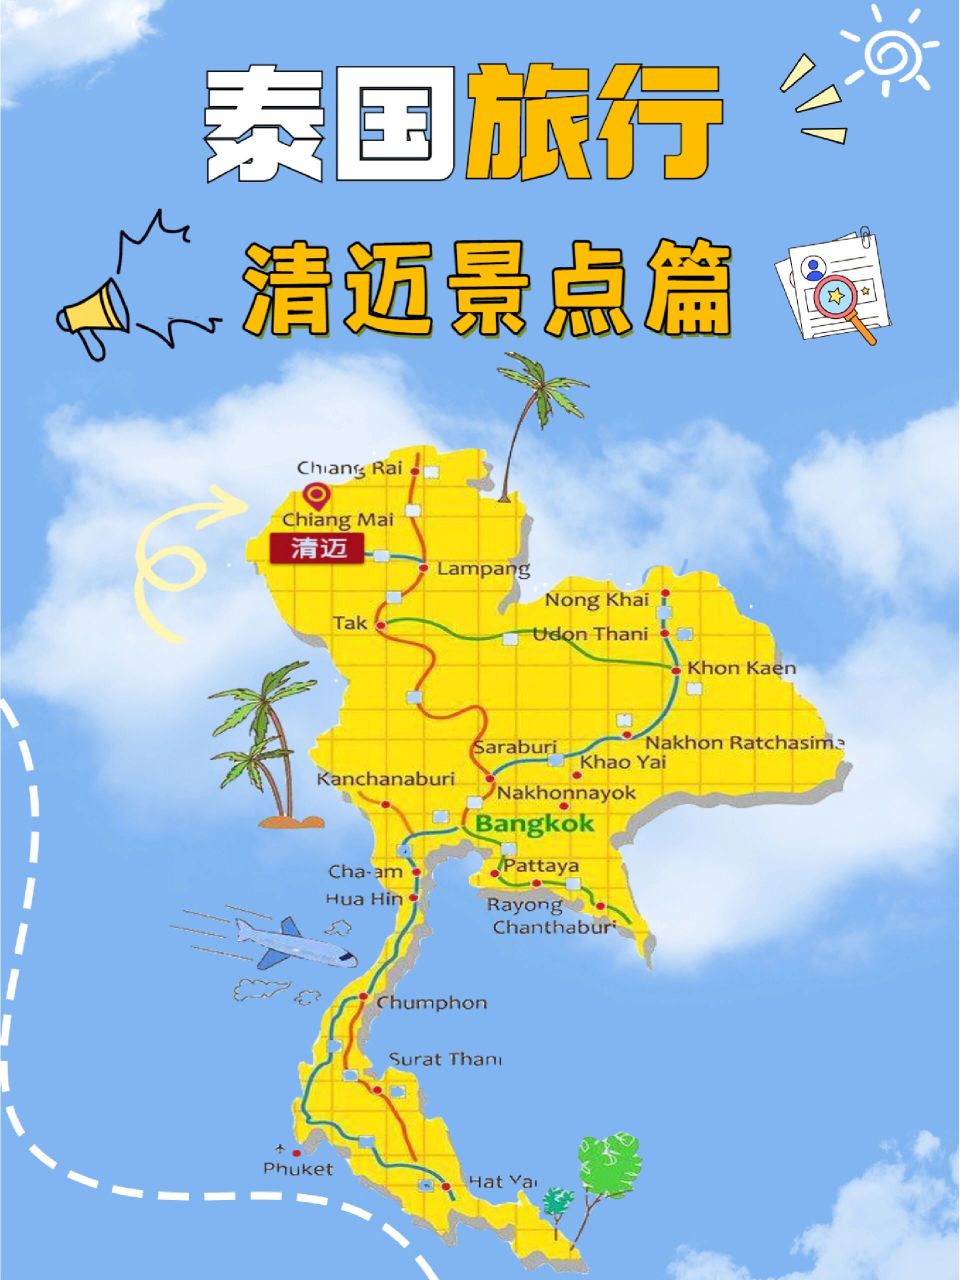 「泰国旅游地图app」✅ 泰国旅游地图软件